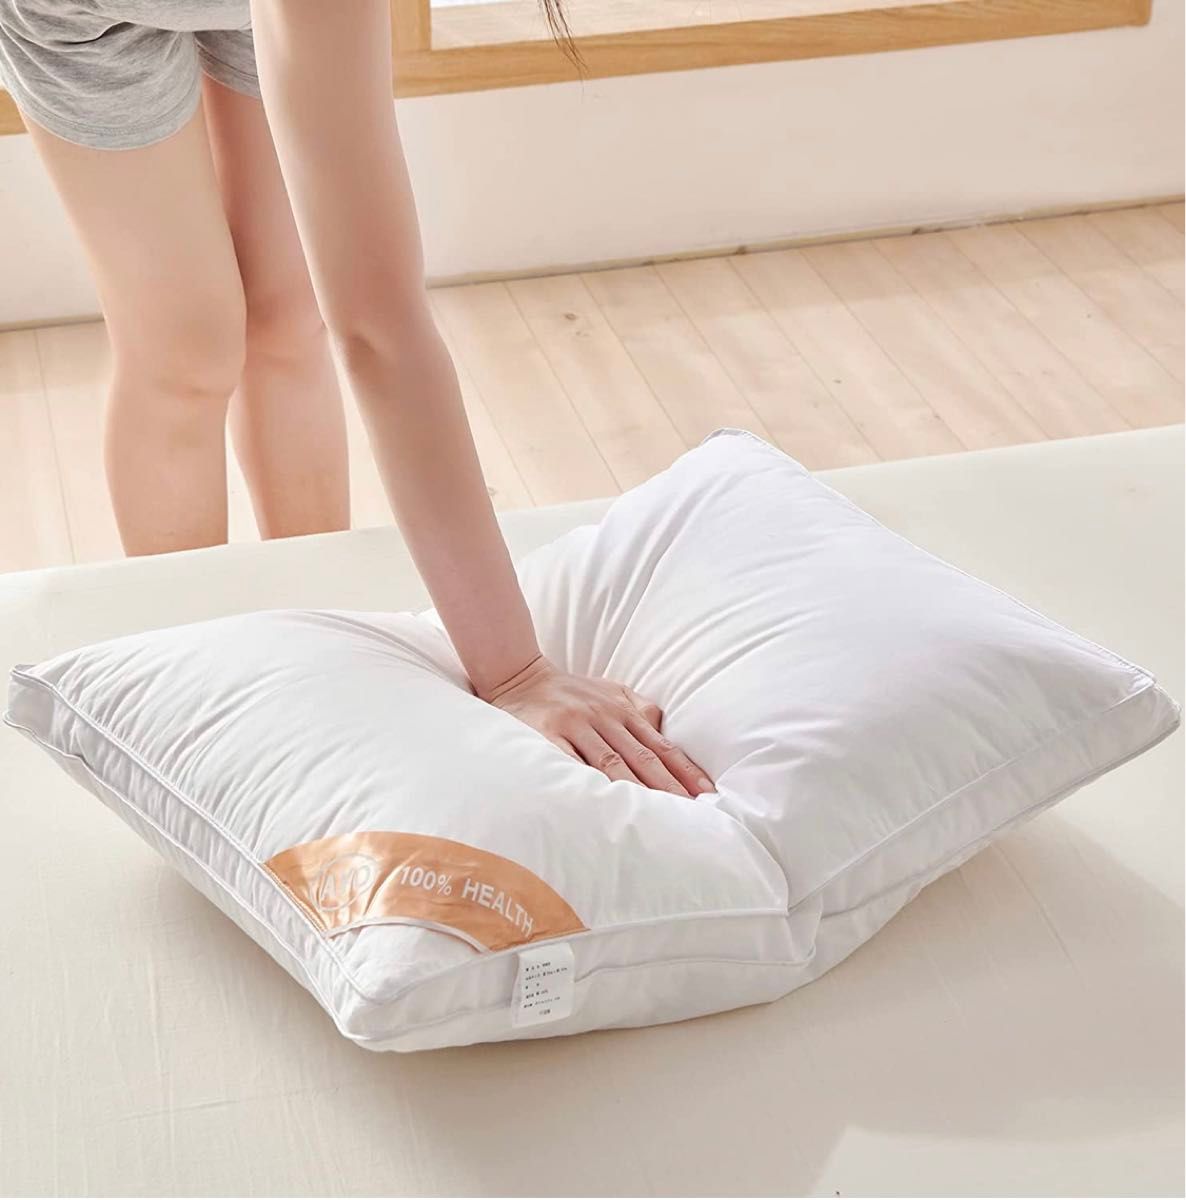 2個セット 枕 まくら ホテル仕様 高反発枕 横向き対応 丸洗い可能 立体構造 ホワイト(長さ63cm*幅43cm高さ20cm) 